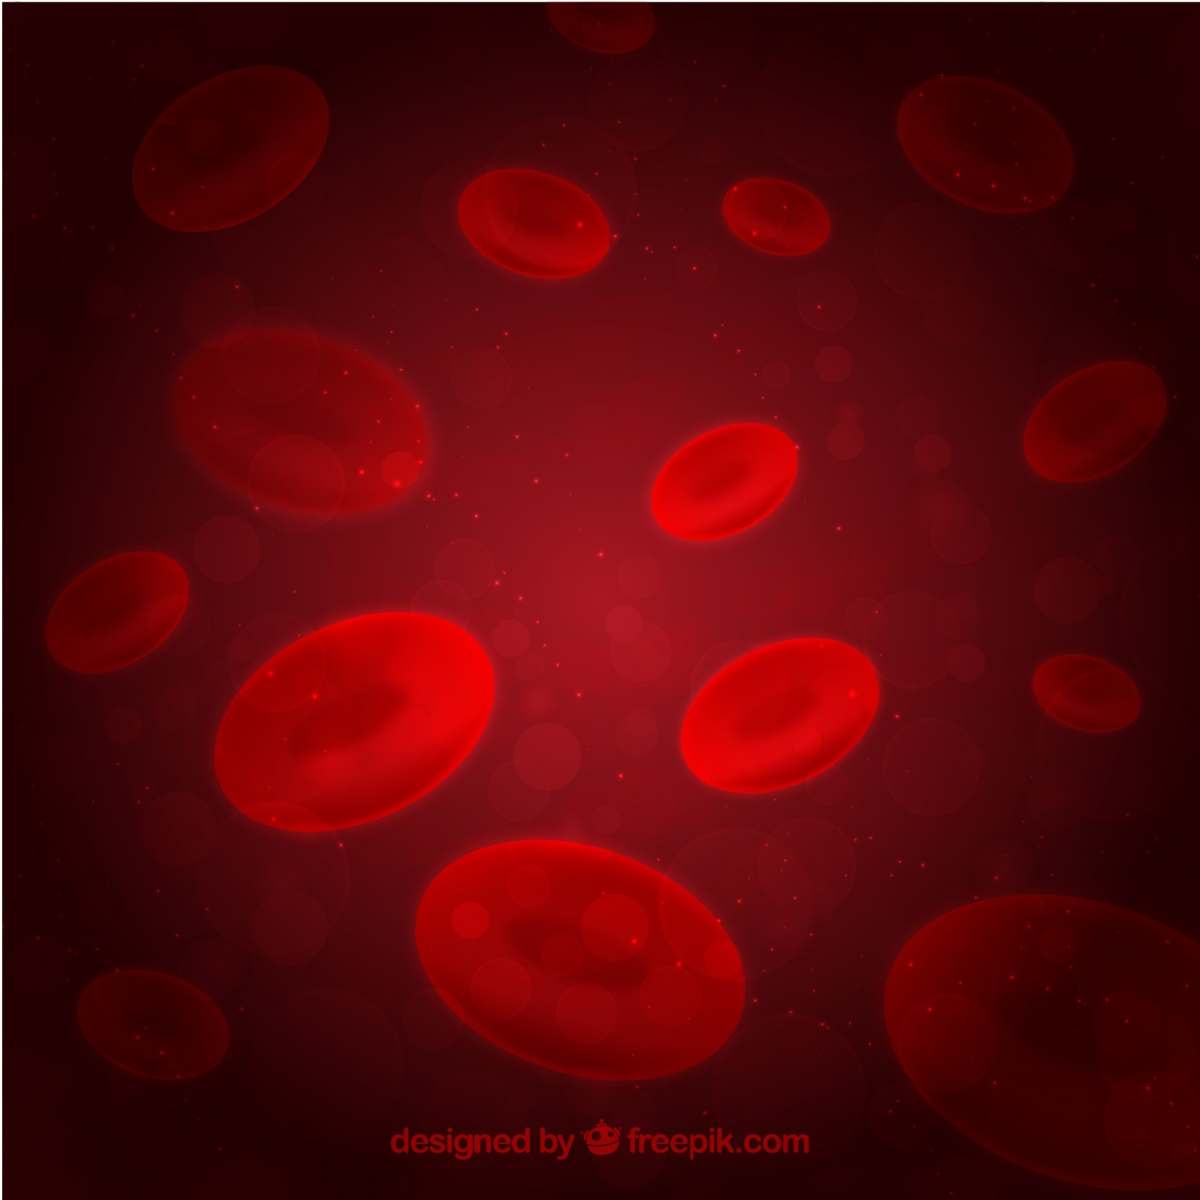 imagem do sangue para explicar o priapismo